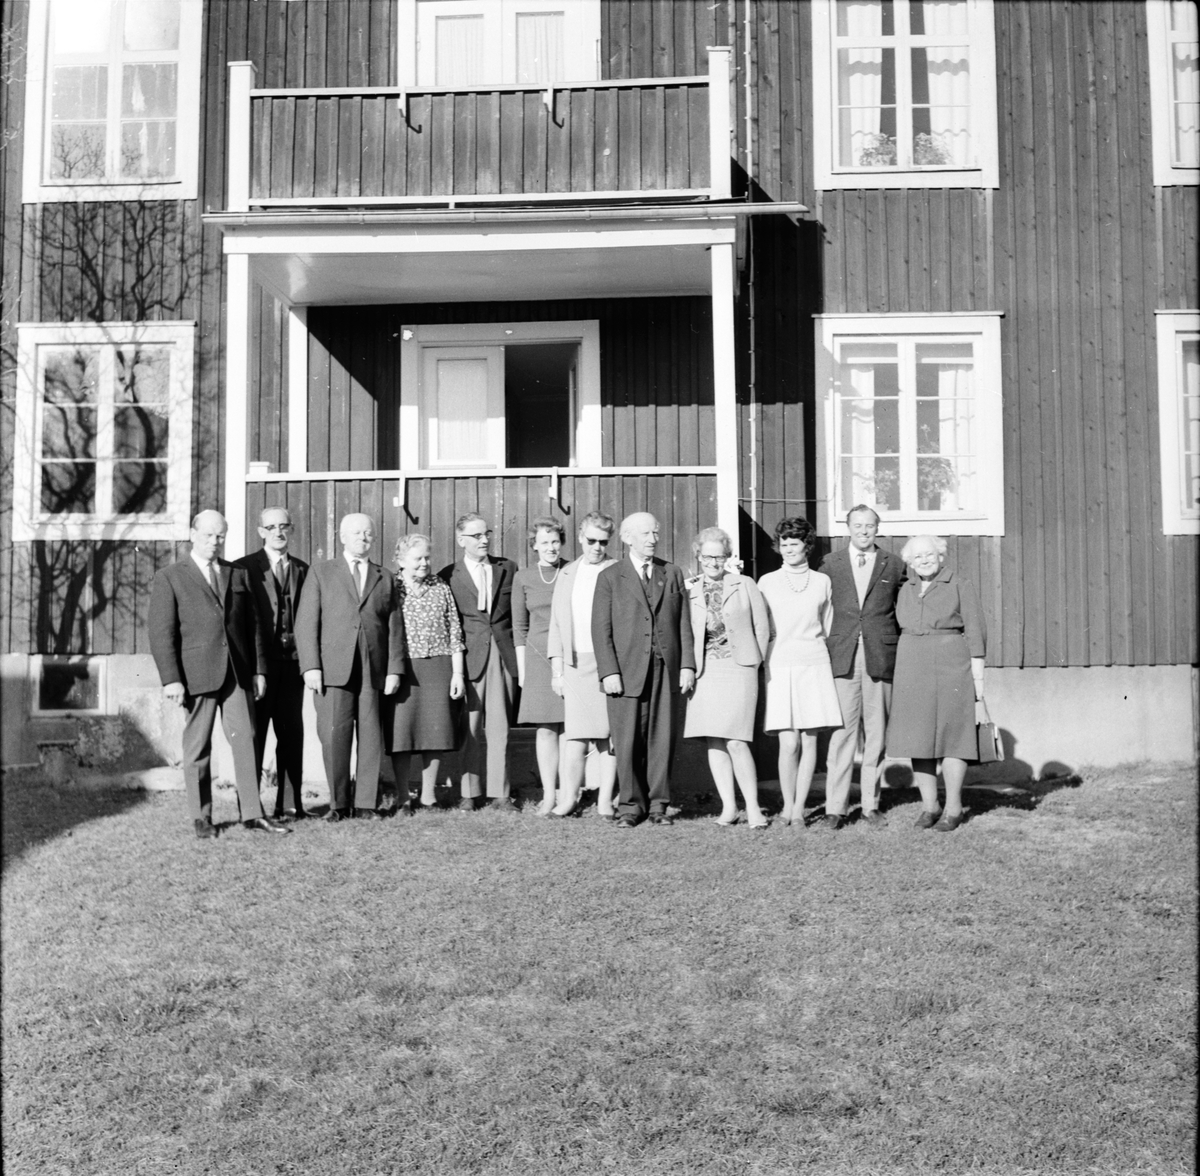 Bollnäs,
Hembygdsföreninges styrelsesammanträde i Stocksäter,
27 April 1968